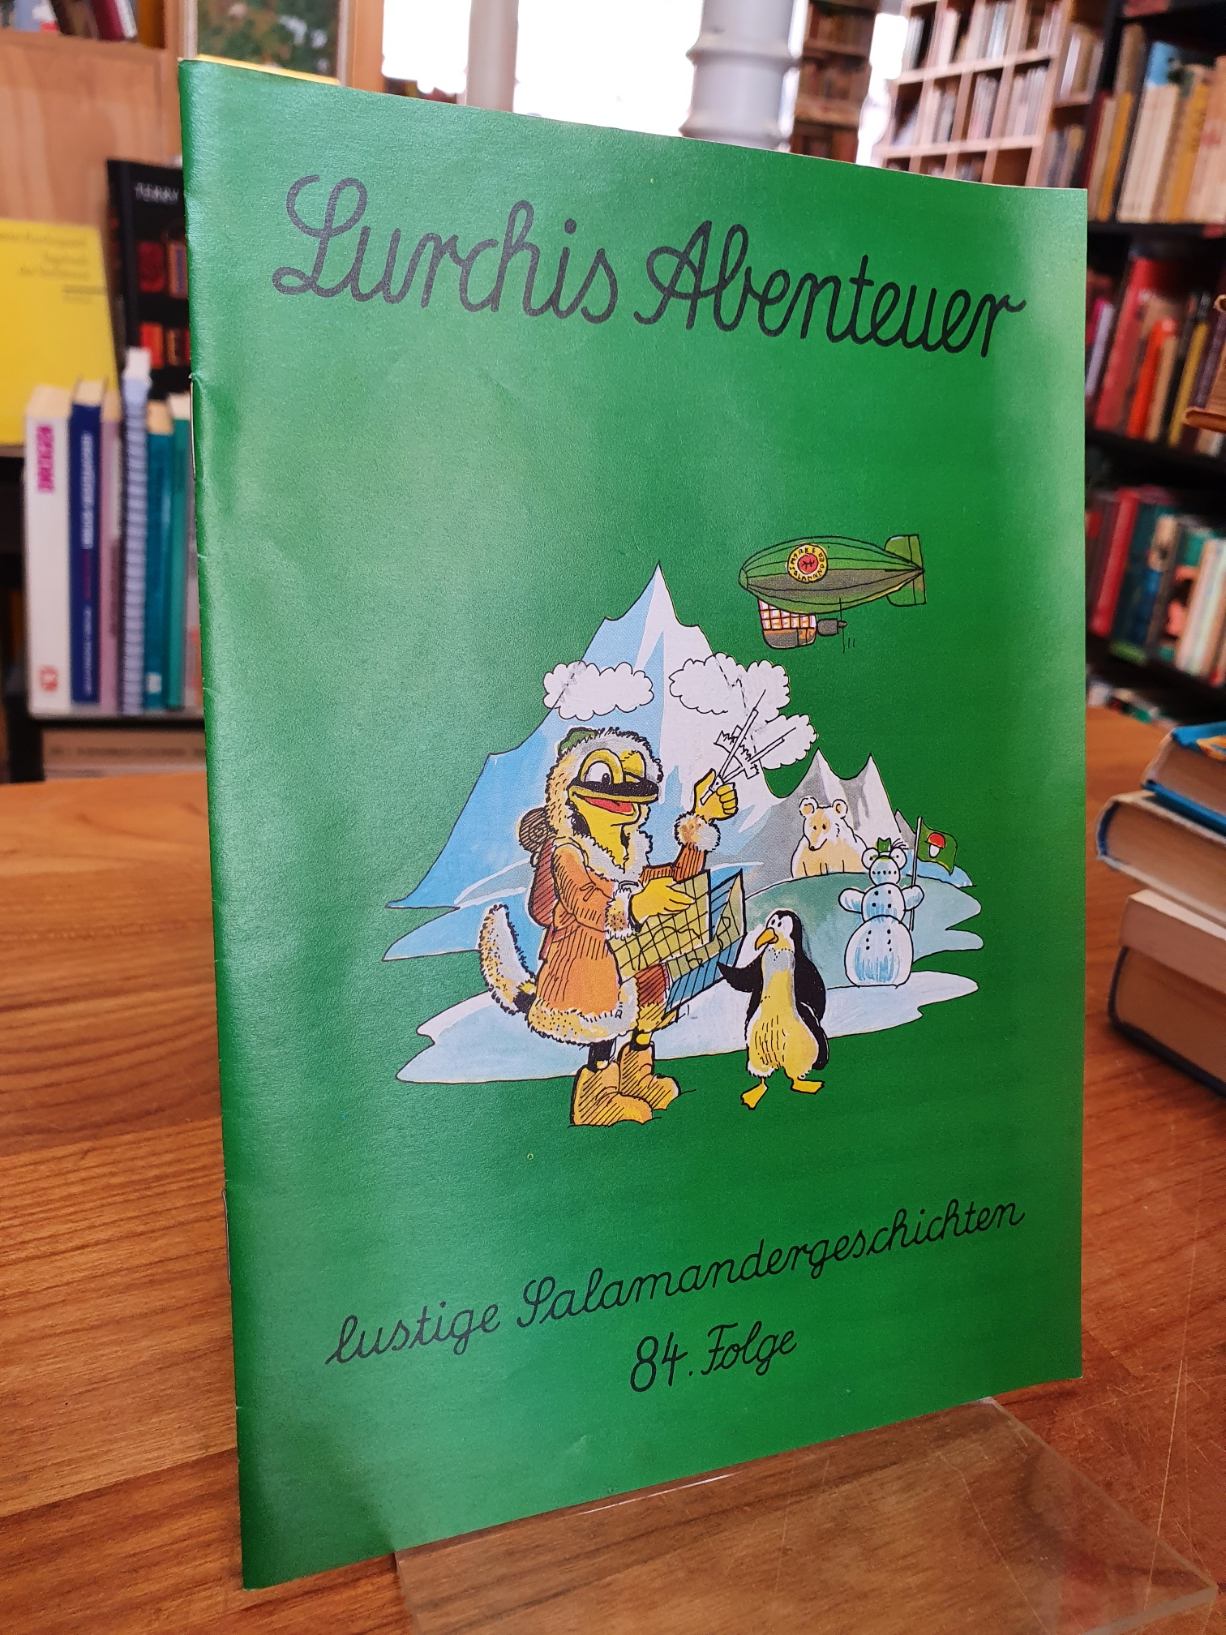 Salamander AG (Hrsg.), Lurchis Abenteuer – Lustige Salamandergeschichten, 84. Fo